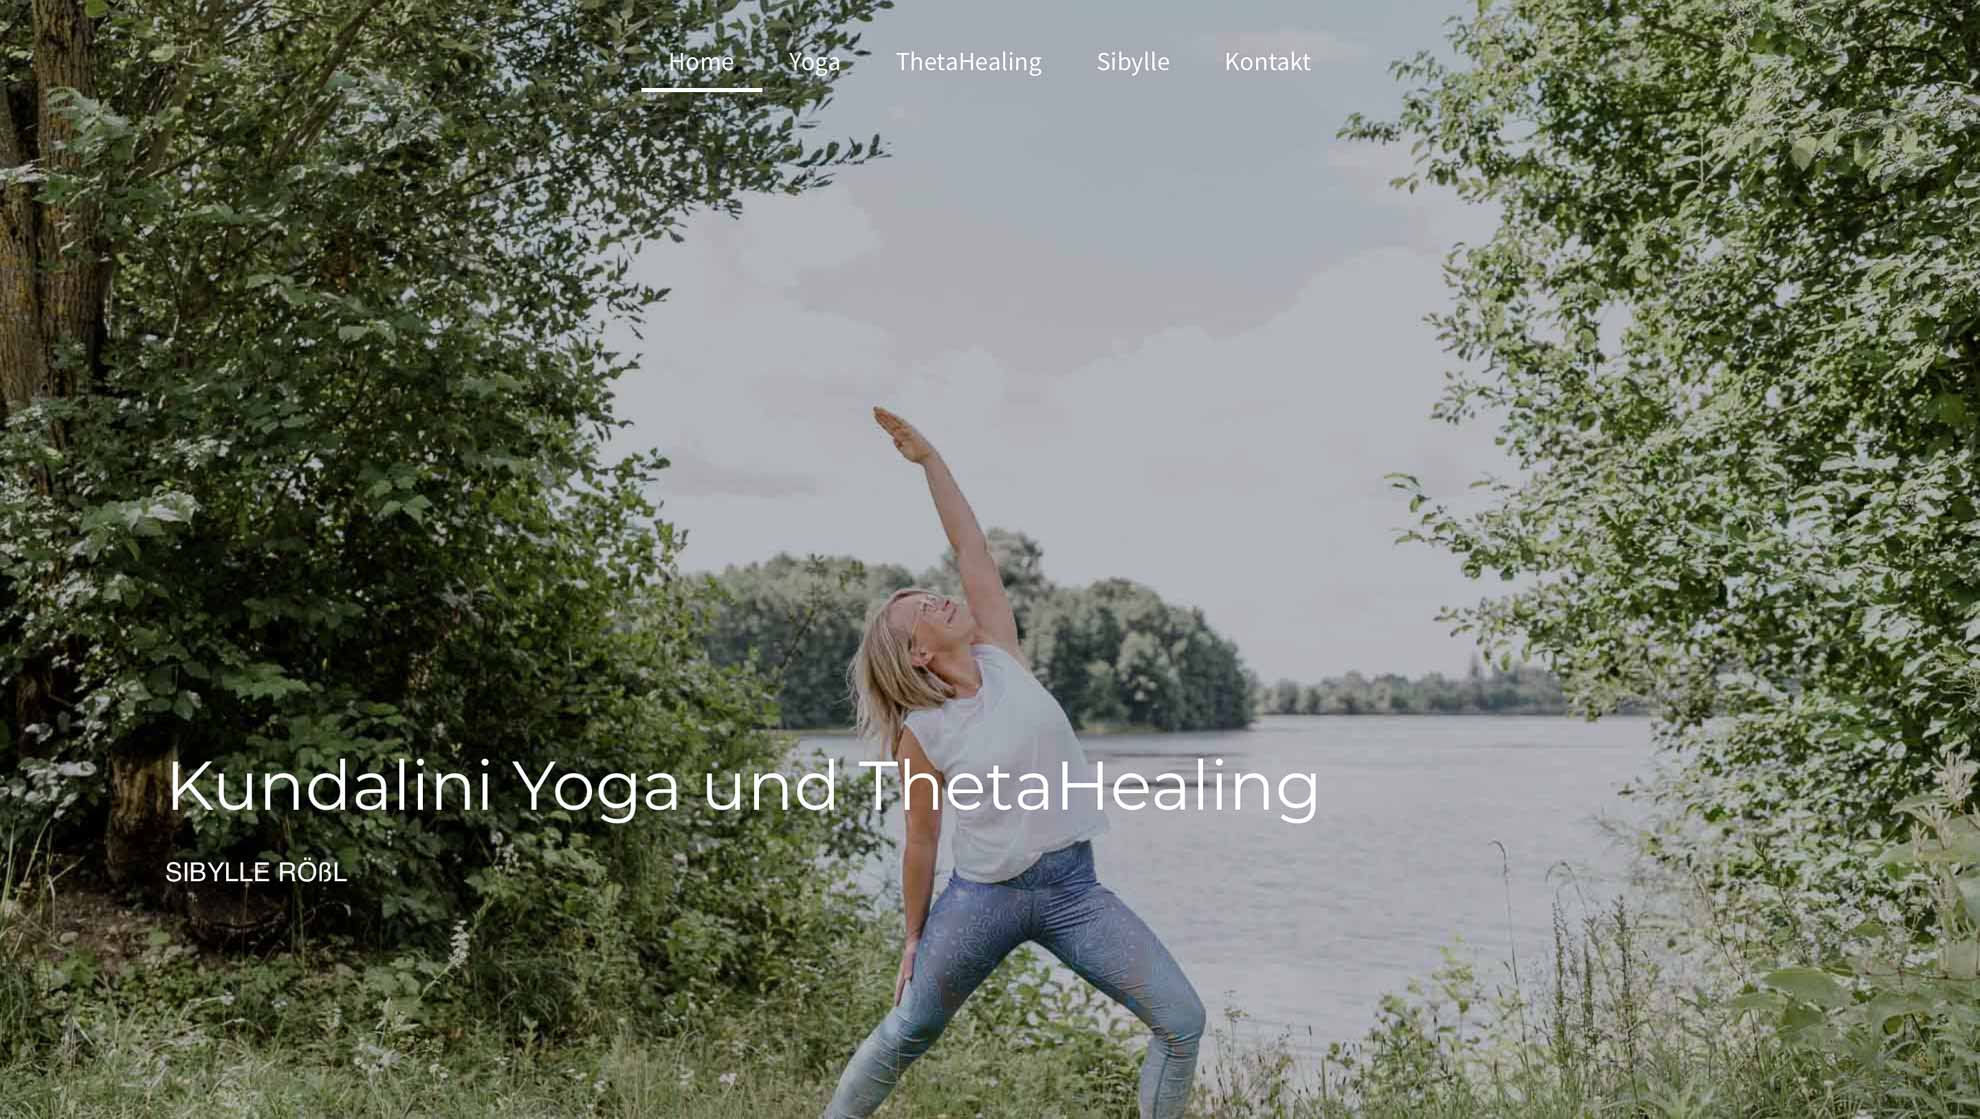 Website für Yoga gestaltet von Oh Nord Studio